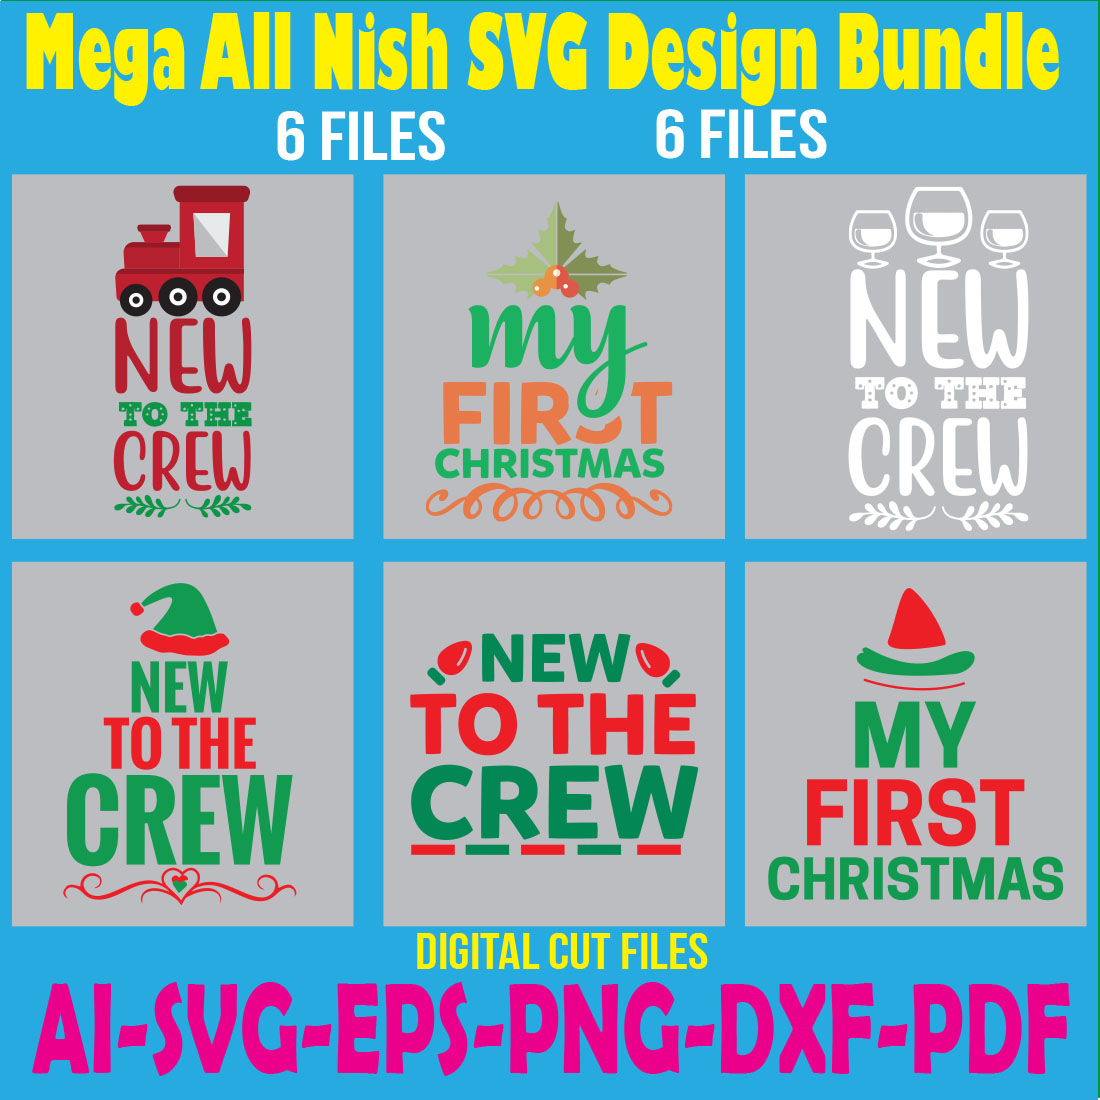 Mega All Nish SVG Design Bundle cover image.